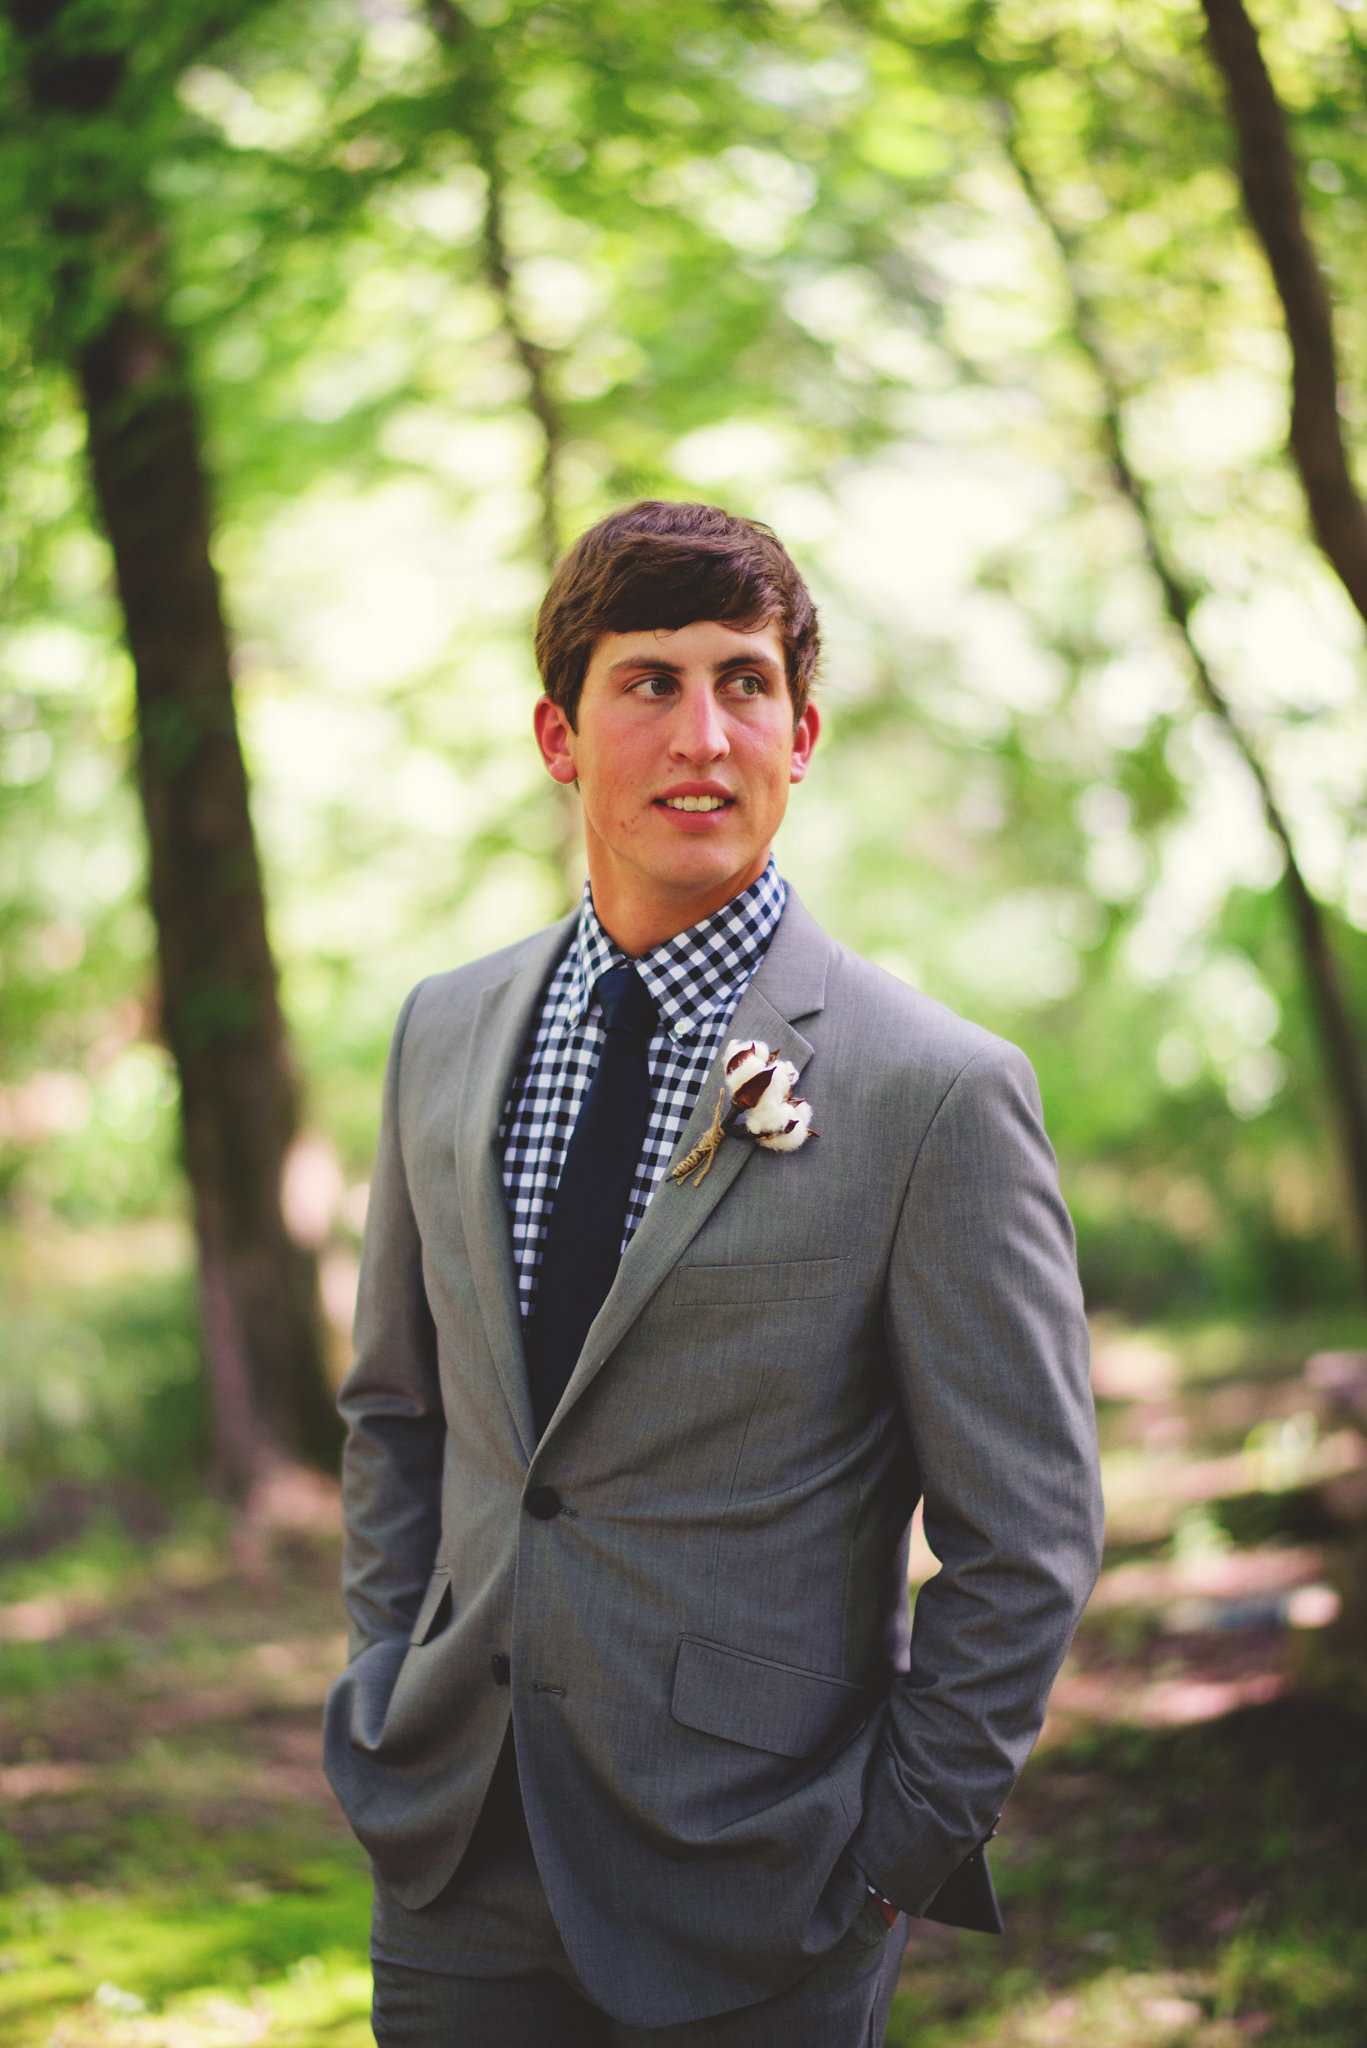 Tres Beau Weddings | Wedding Planner | Birmingham Alabama